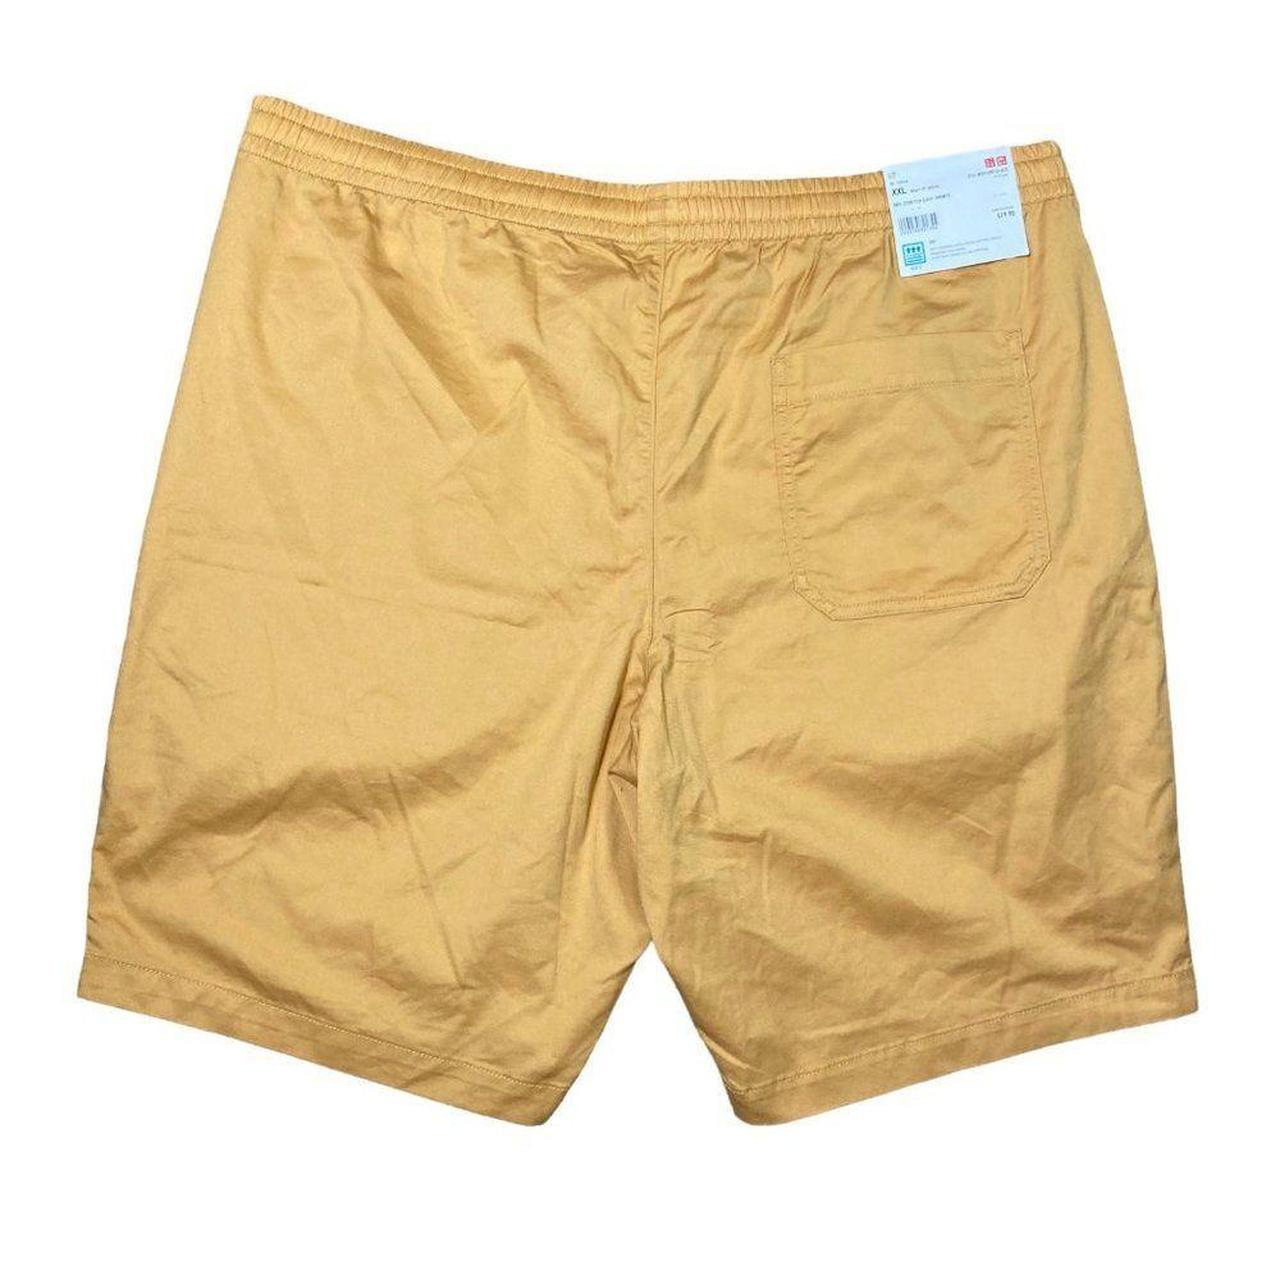 Item: Uniqlo Shorts Dry Stretch Easy Mens Size 2XL - Depop